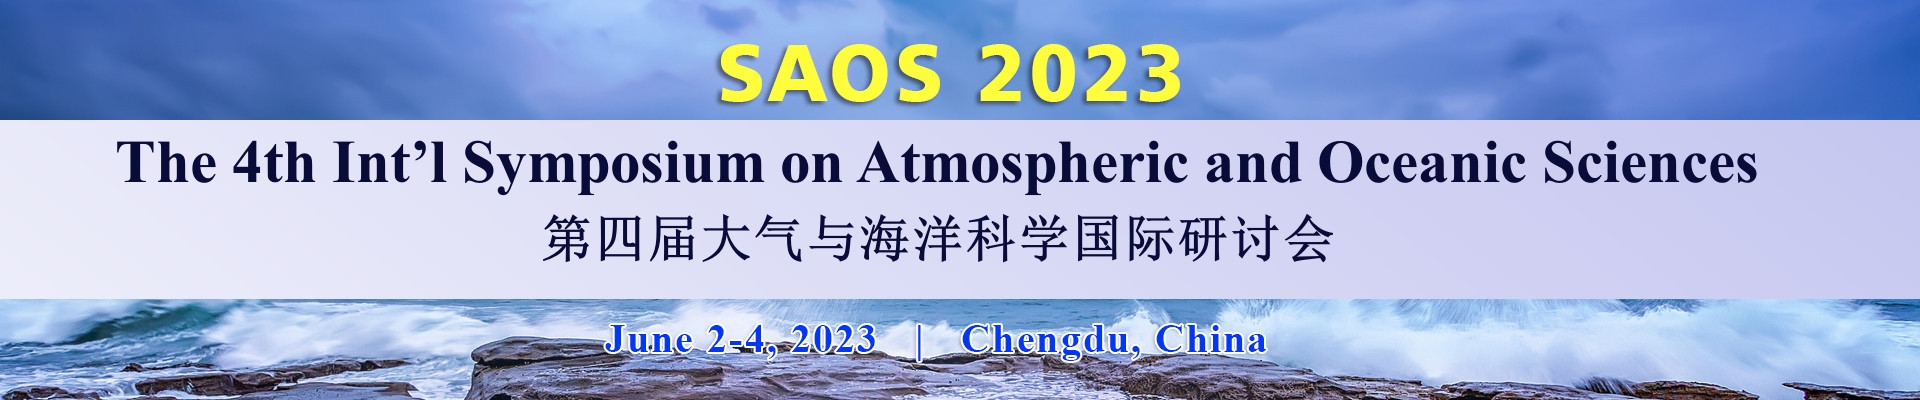 第四届大气与海洋科学国际研讨会(SAOS 2023)